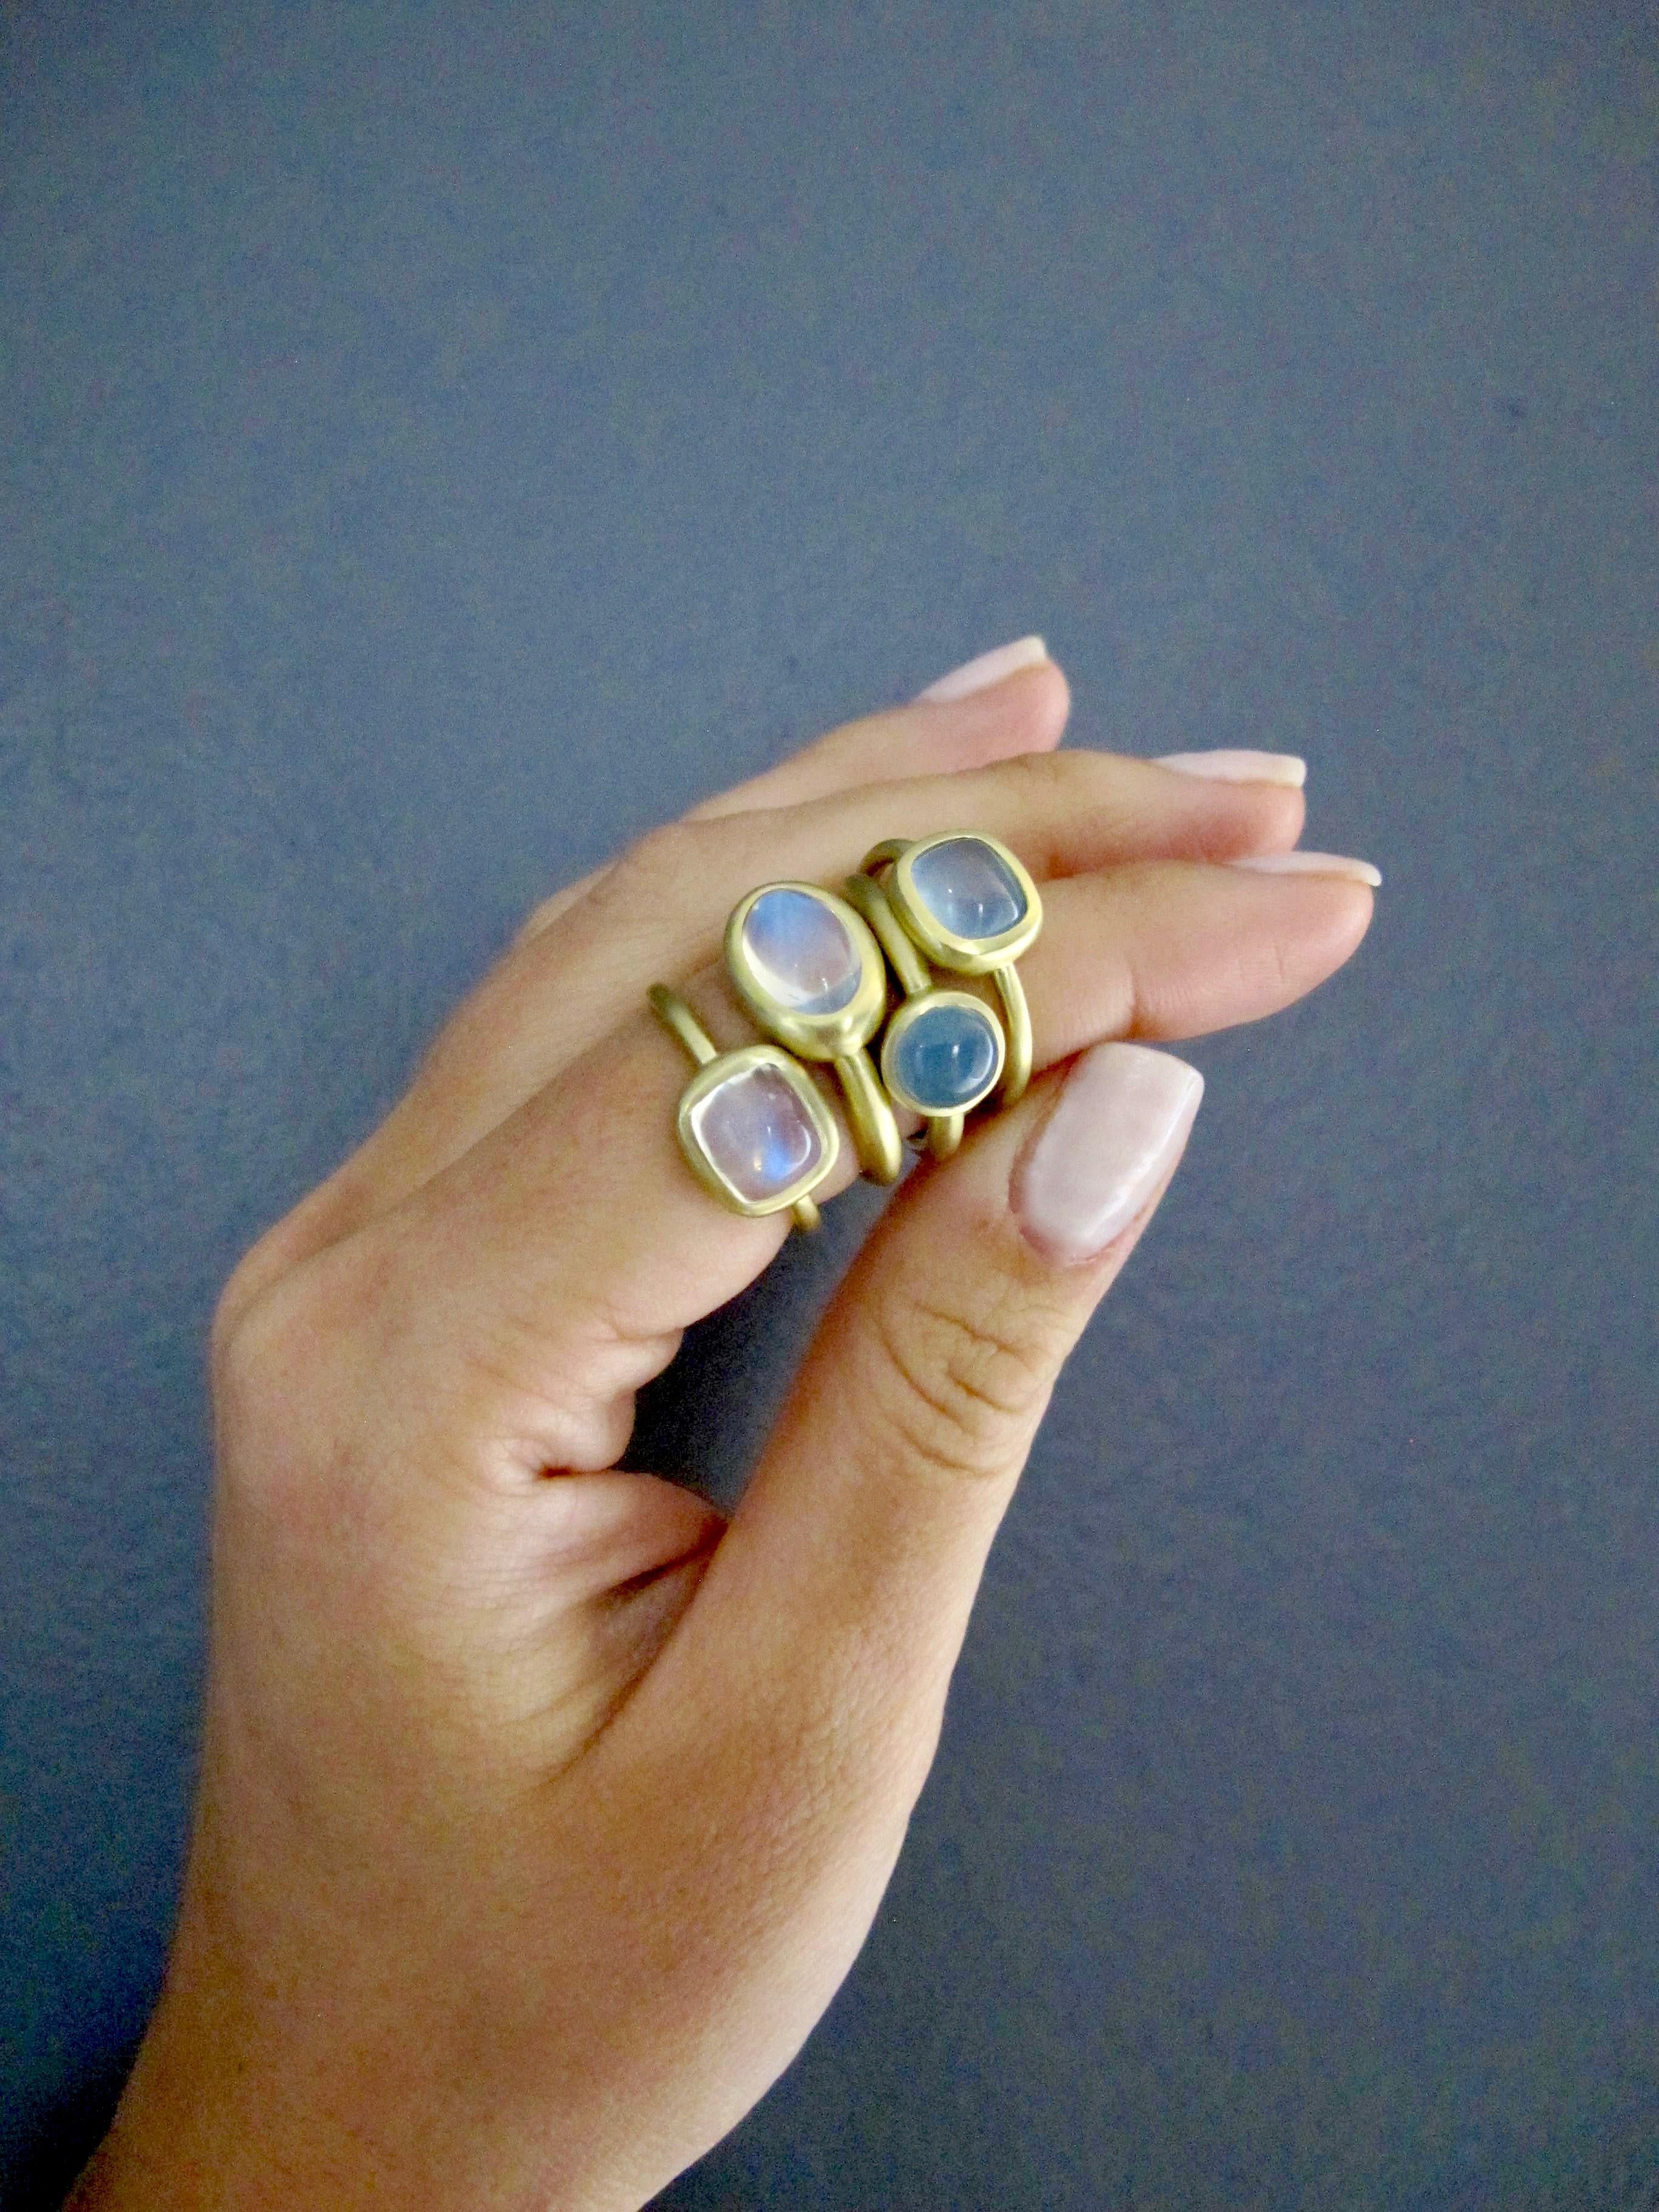 Faye Kim 18K Gold Kissenschliff Mondstein Ring
Handgefertigt aus 18 Karat Grüngold ist dieser wunderschöne Mondsteinring voller Licht und reflektiert wunderschöne durchscheinende blaue Farbtöne. Die klare Form, der Schliff und das matte Gold